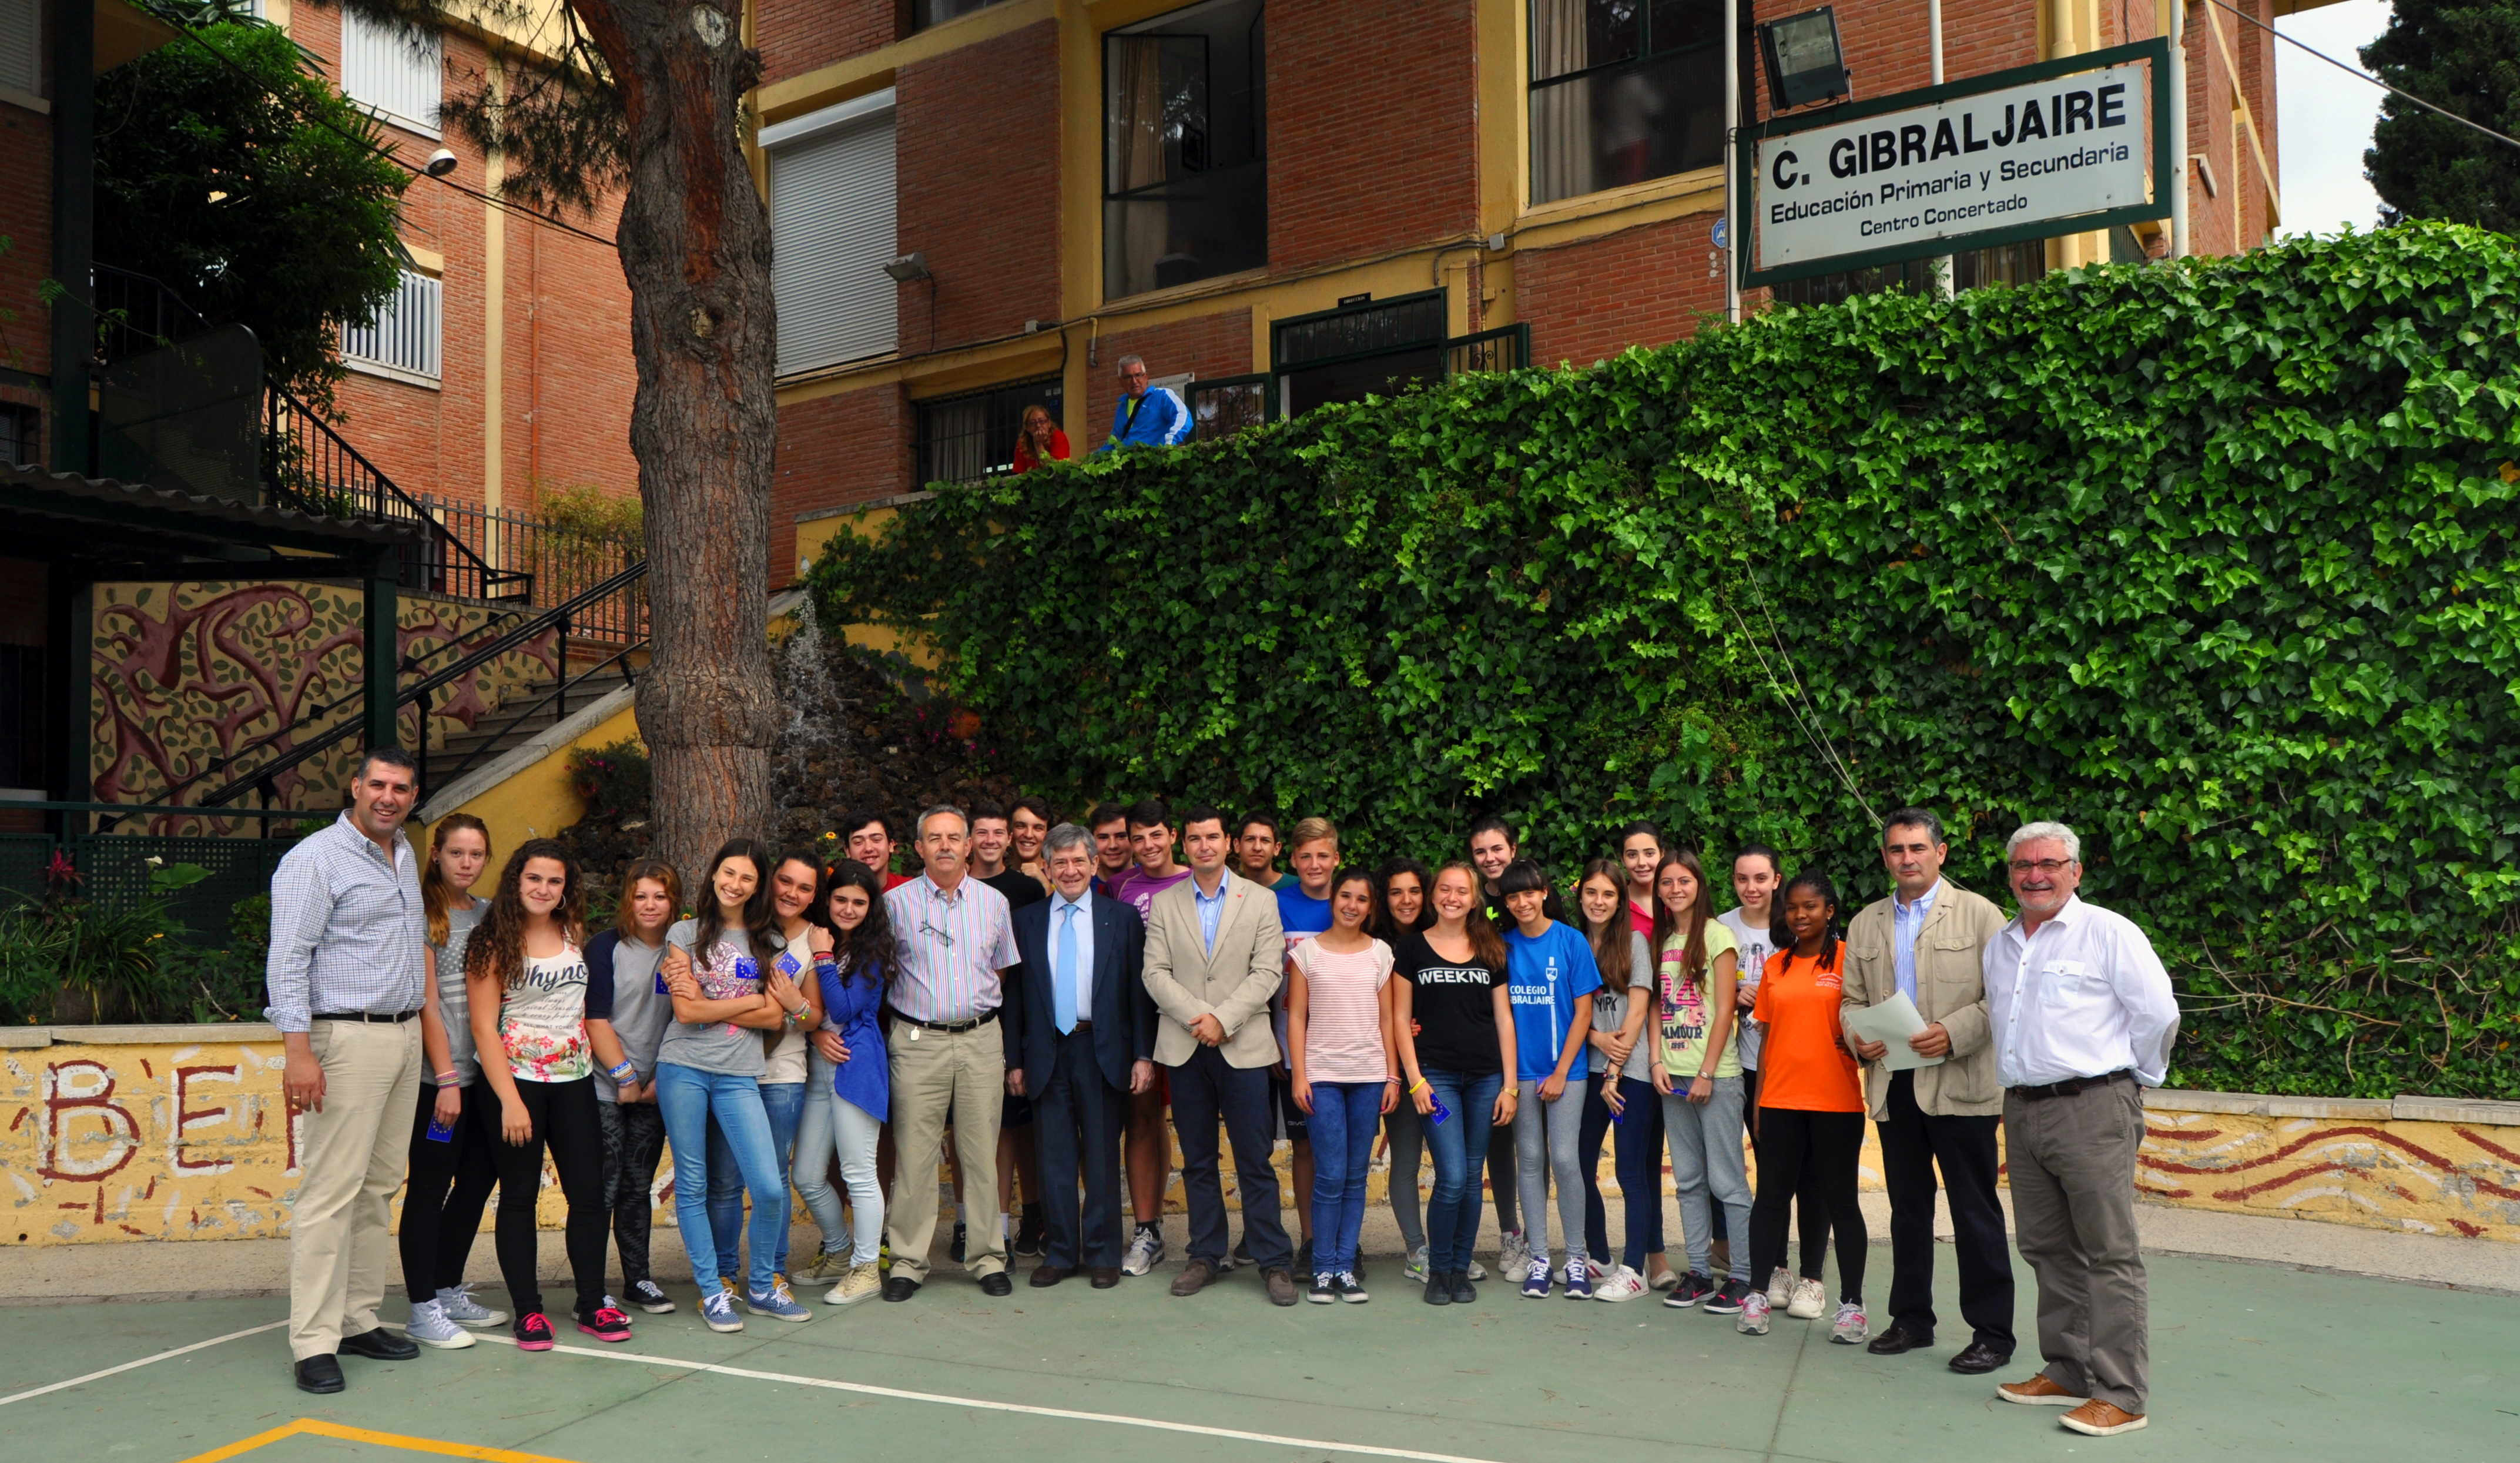 Col Gibraljaire - Cuéntame tu Europa - Enrique Barón visita el Colegio Gibraljaire